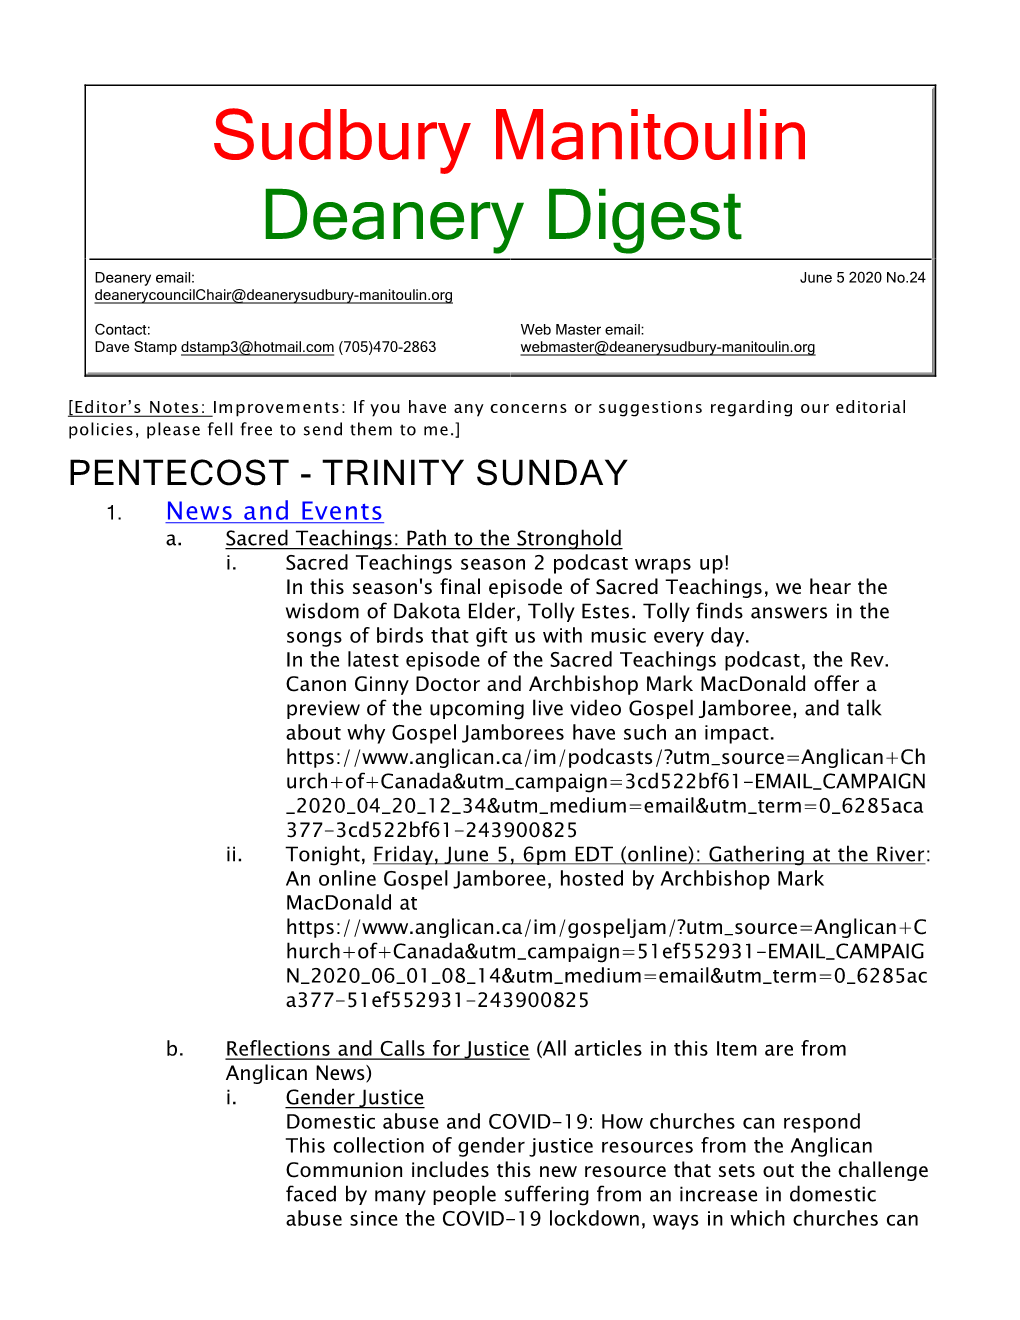 5 June 2020 Deanery Newsletter